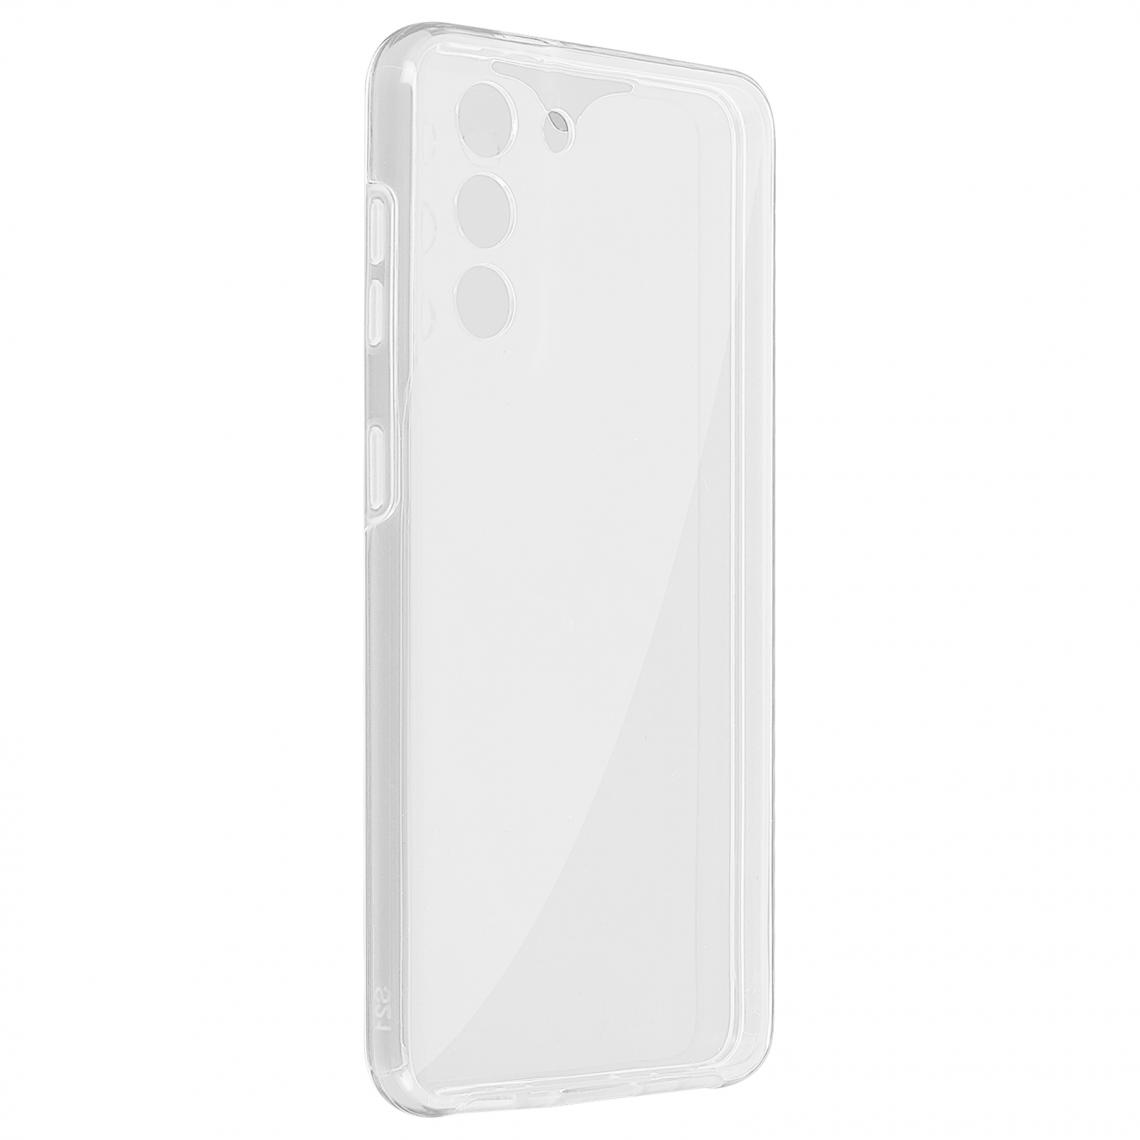 Avizar - Coque Galaxy S21 Plus Protection Arrière Rigide et Avant Souple transparent - Coque, étui smartphone